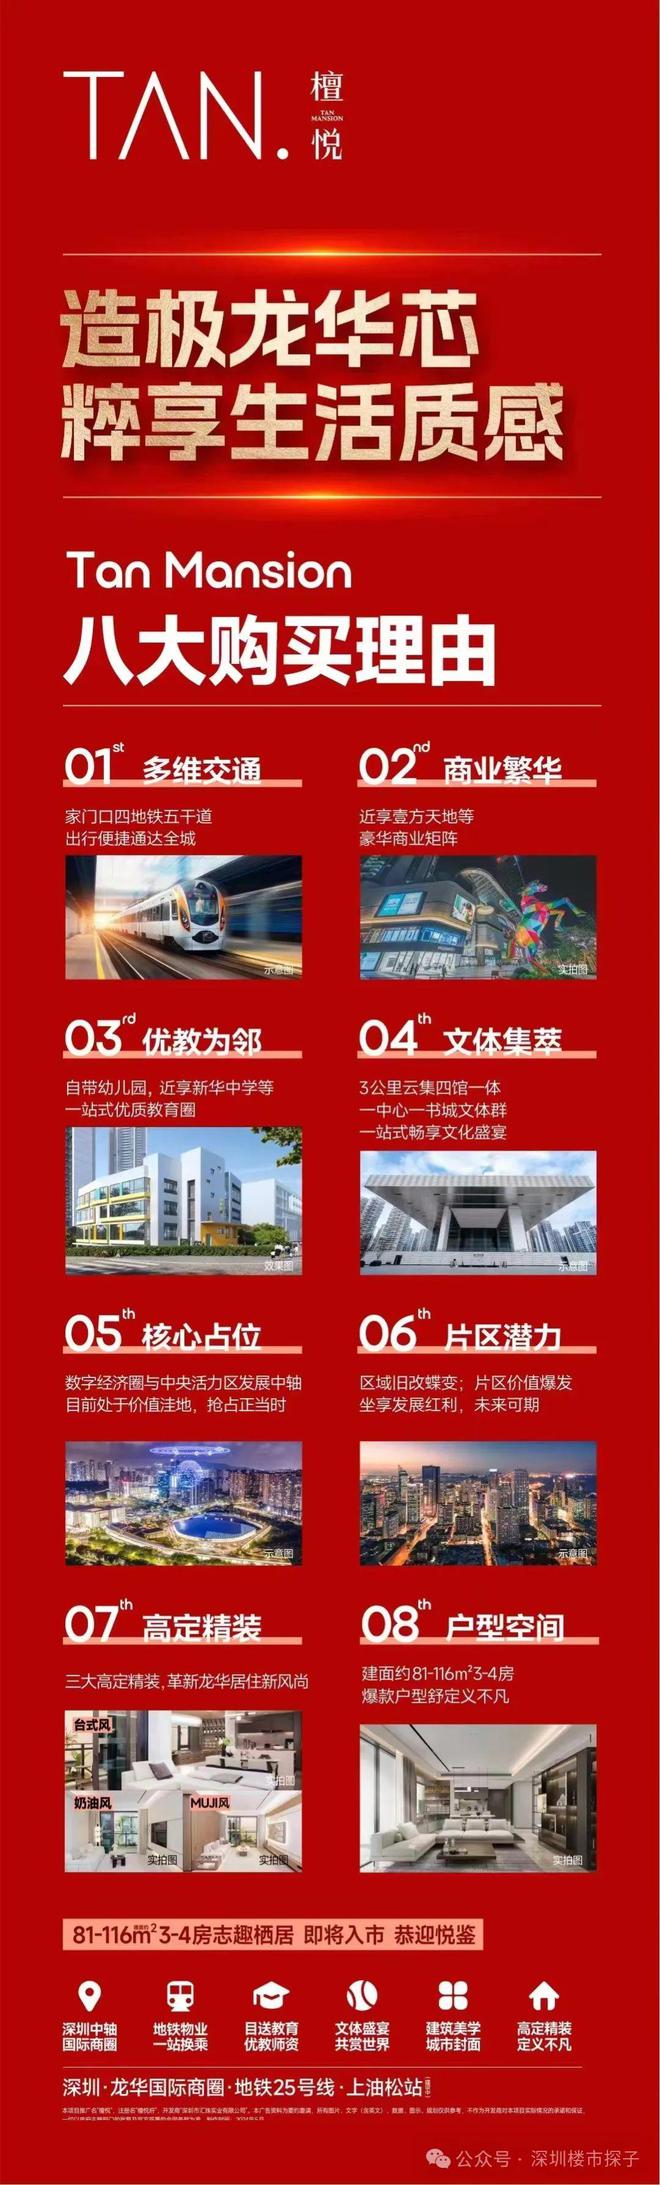 龙华深圳：安卓系统如何融入城市生活与创新热潮？  第4张